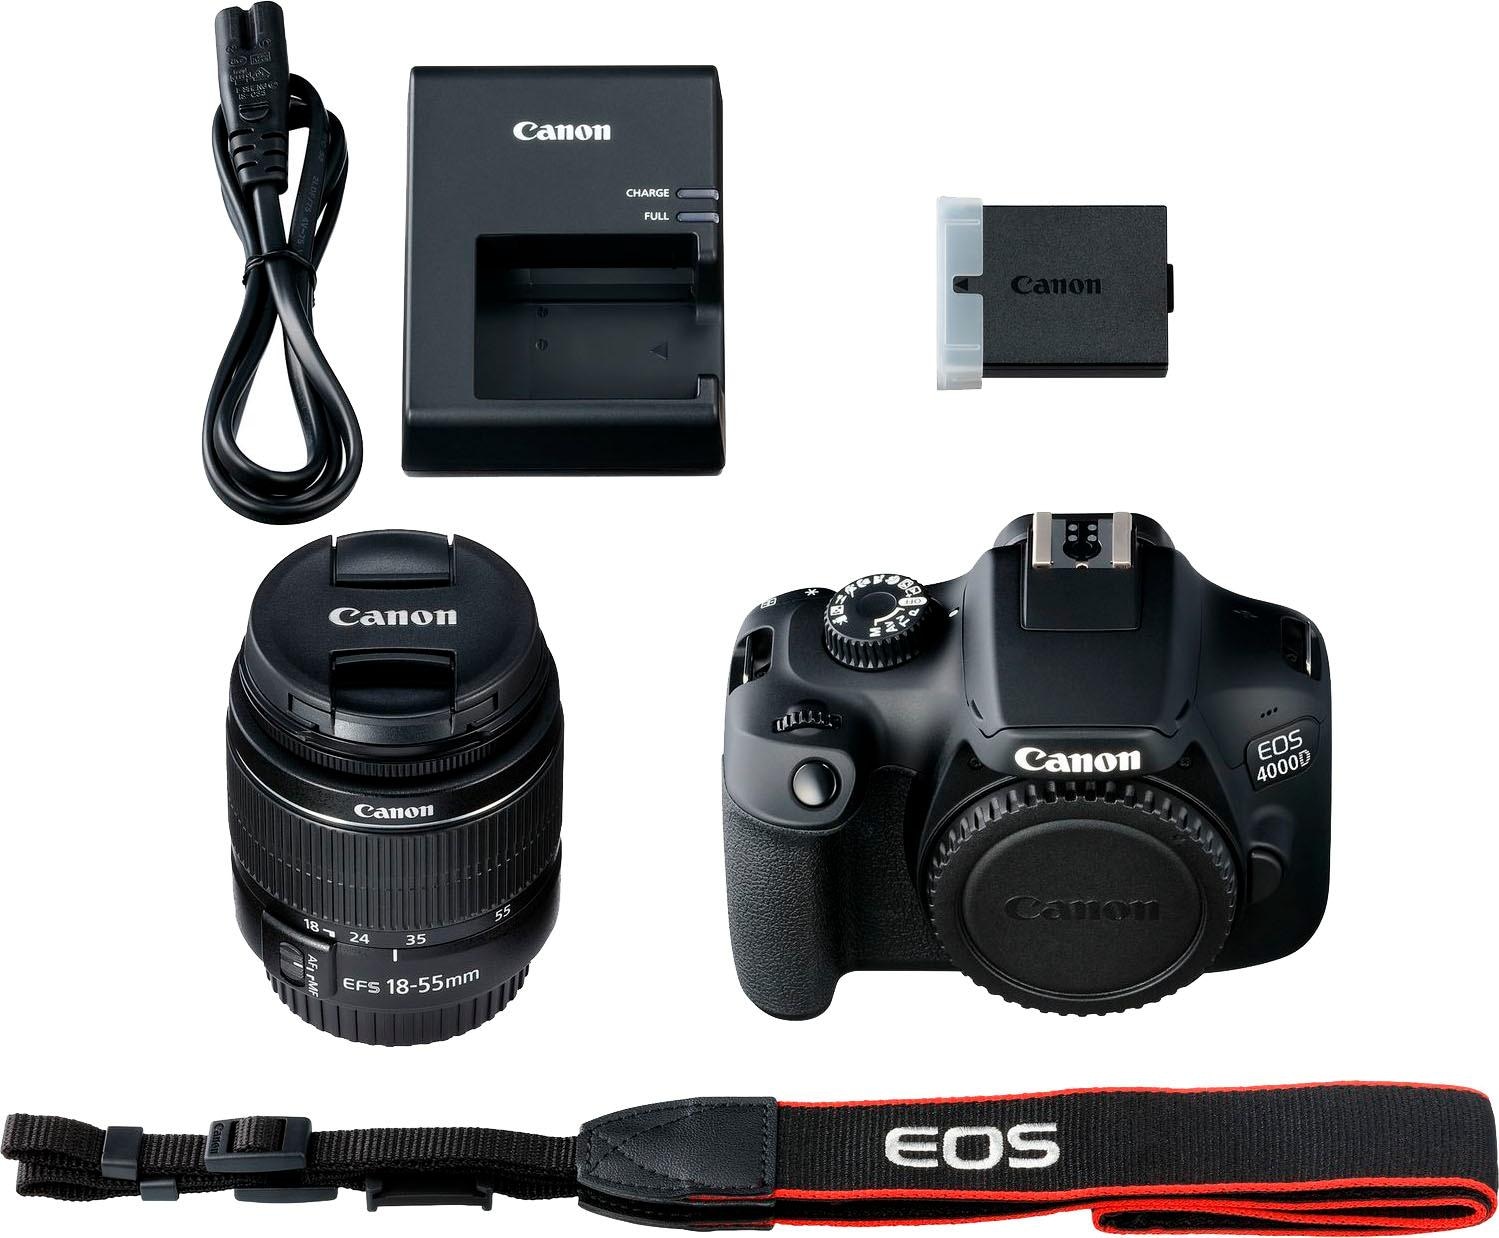 18-55mm 18 BAUR f/3.5-5.6 18-55mm Spiegelreflexkamera EF-S WLAN III, MP, III«, (Wi-Fi) Canon 4000D »EOS |